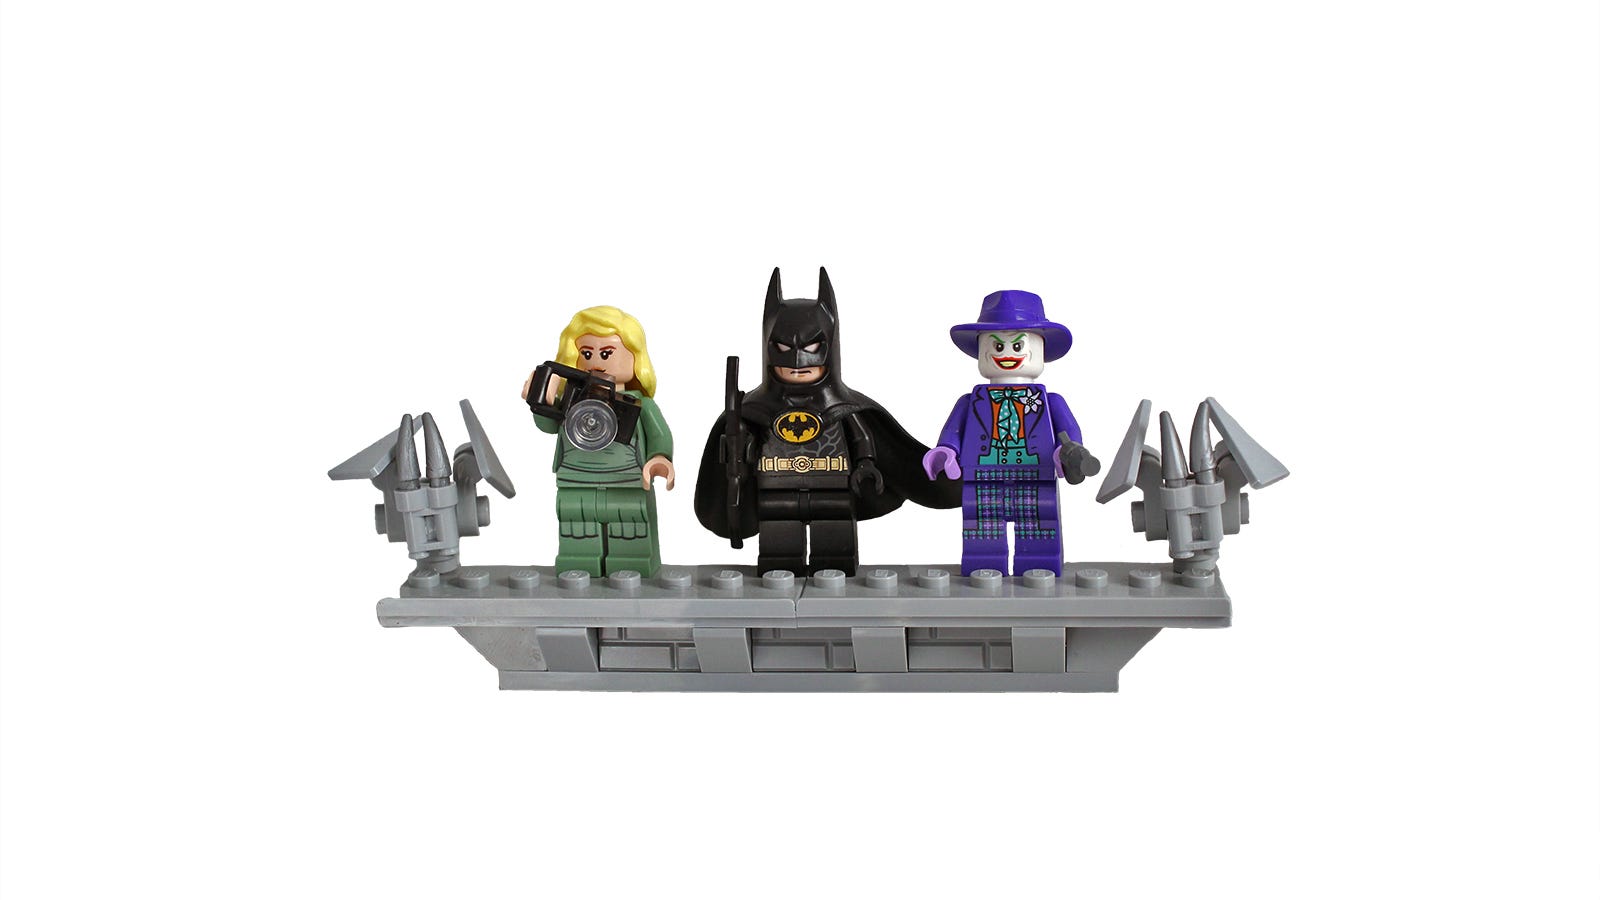 Cận cảnh Vicky Vale, Batman và Joker trong hình dạng LEGO đứng bên cạnh các đầu thú LEGO.